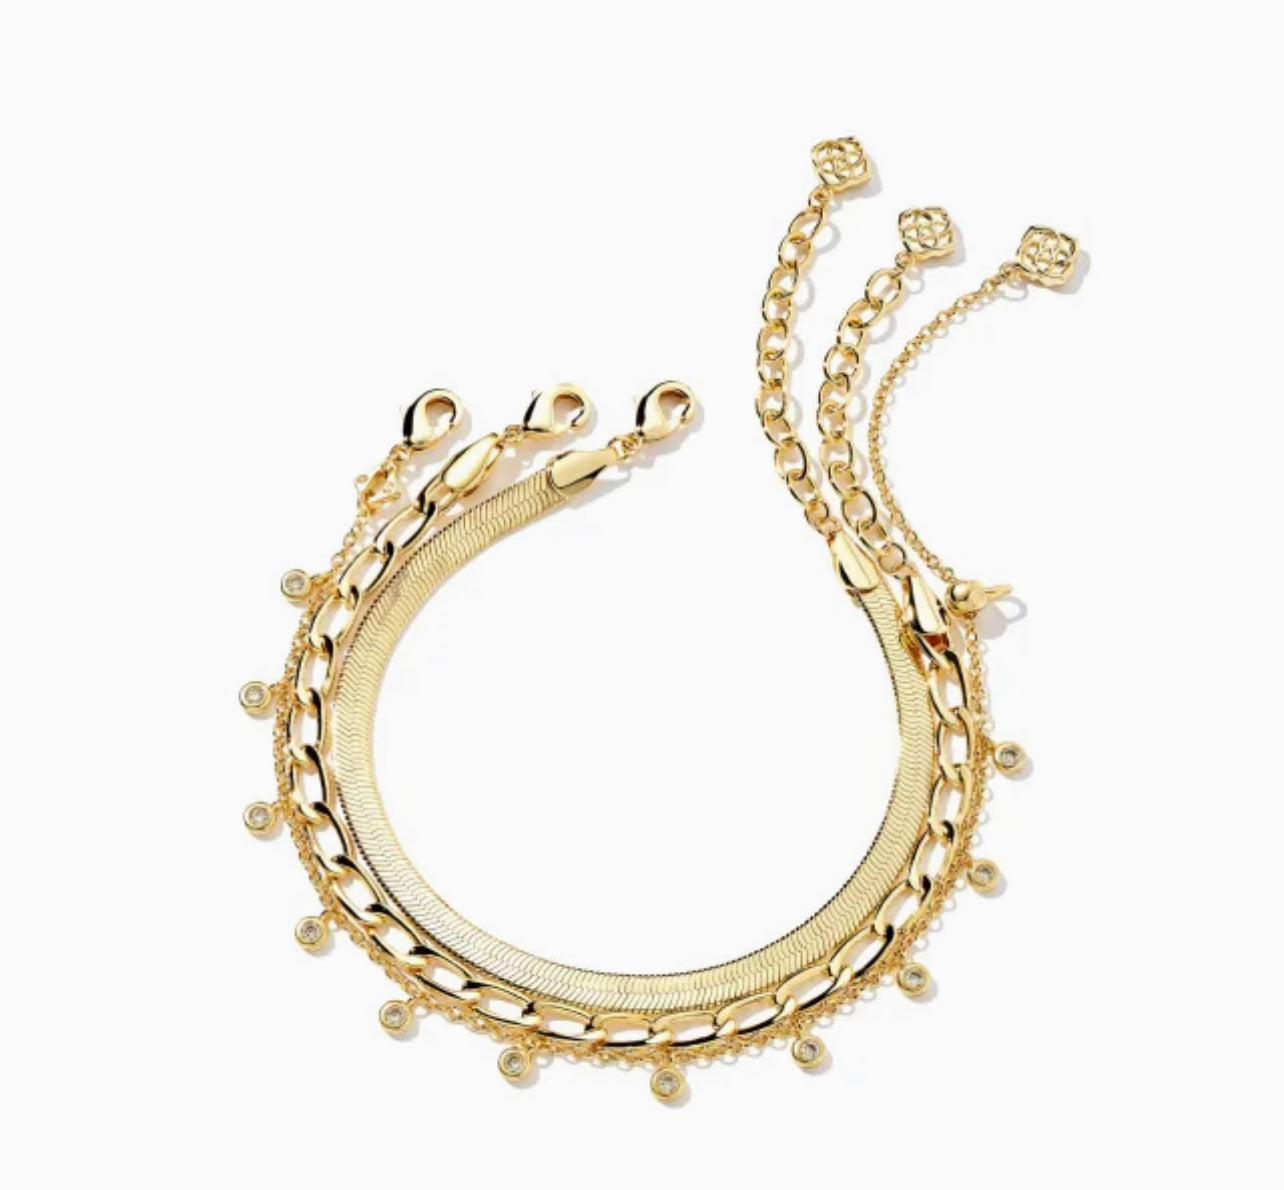 Kendra Scott-Kassie Set of 3 Chain Bracelet in Gold 9608801670